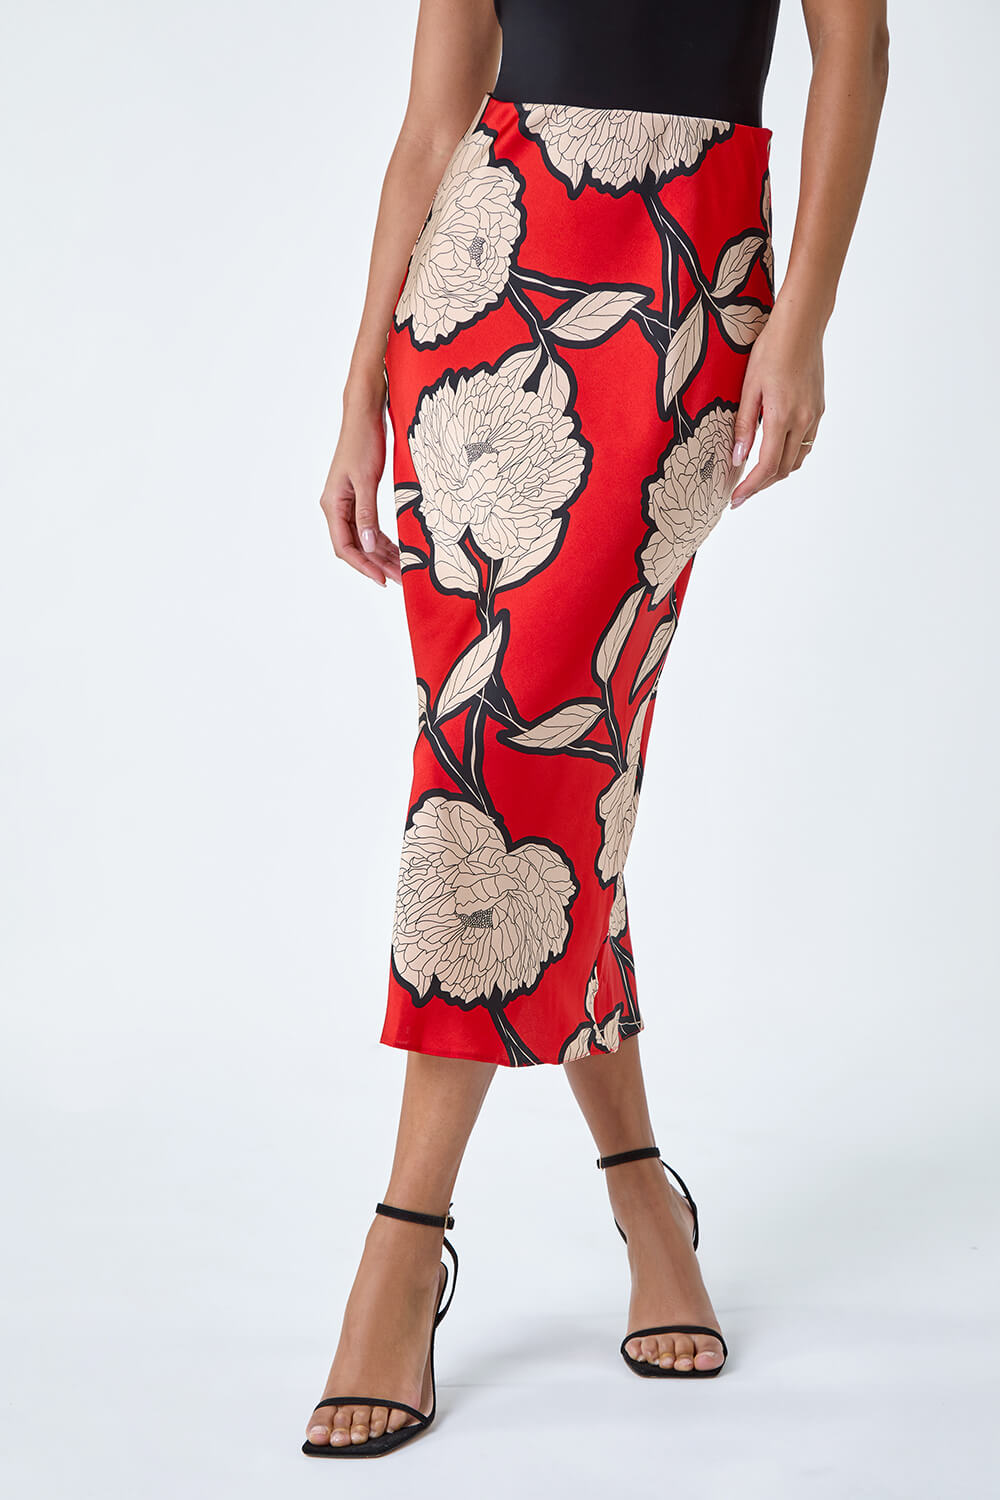 ORANGE Floral Satin Bias Cut Midi Skirt, Image 4 of 5